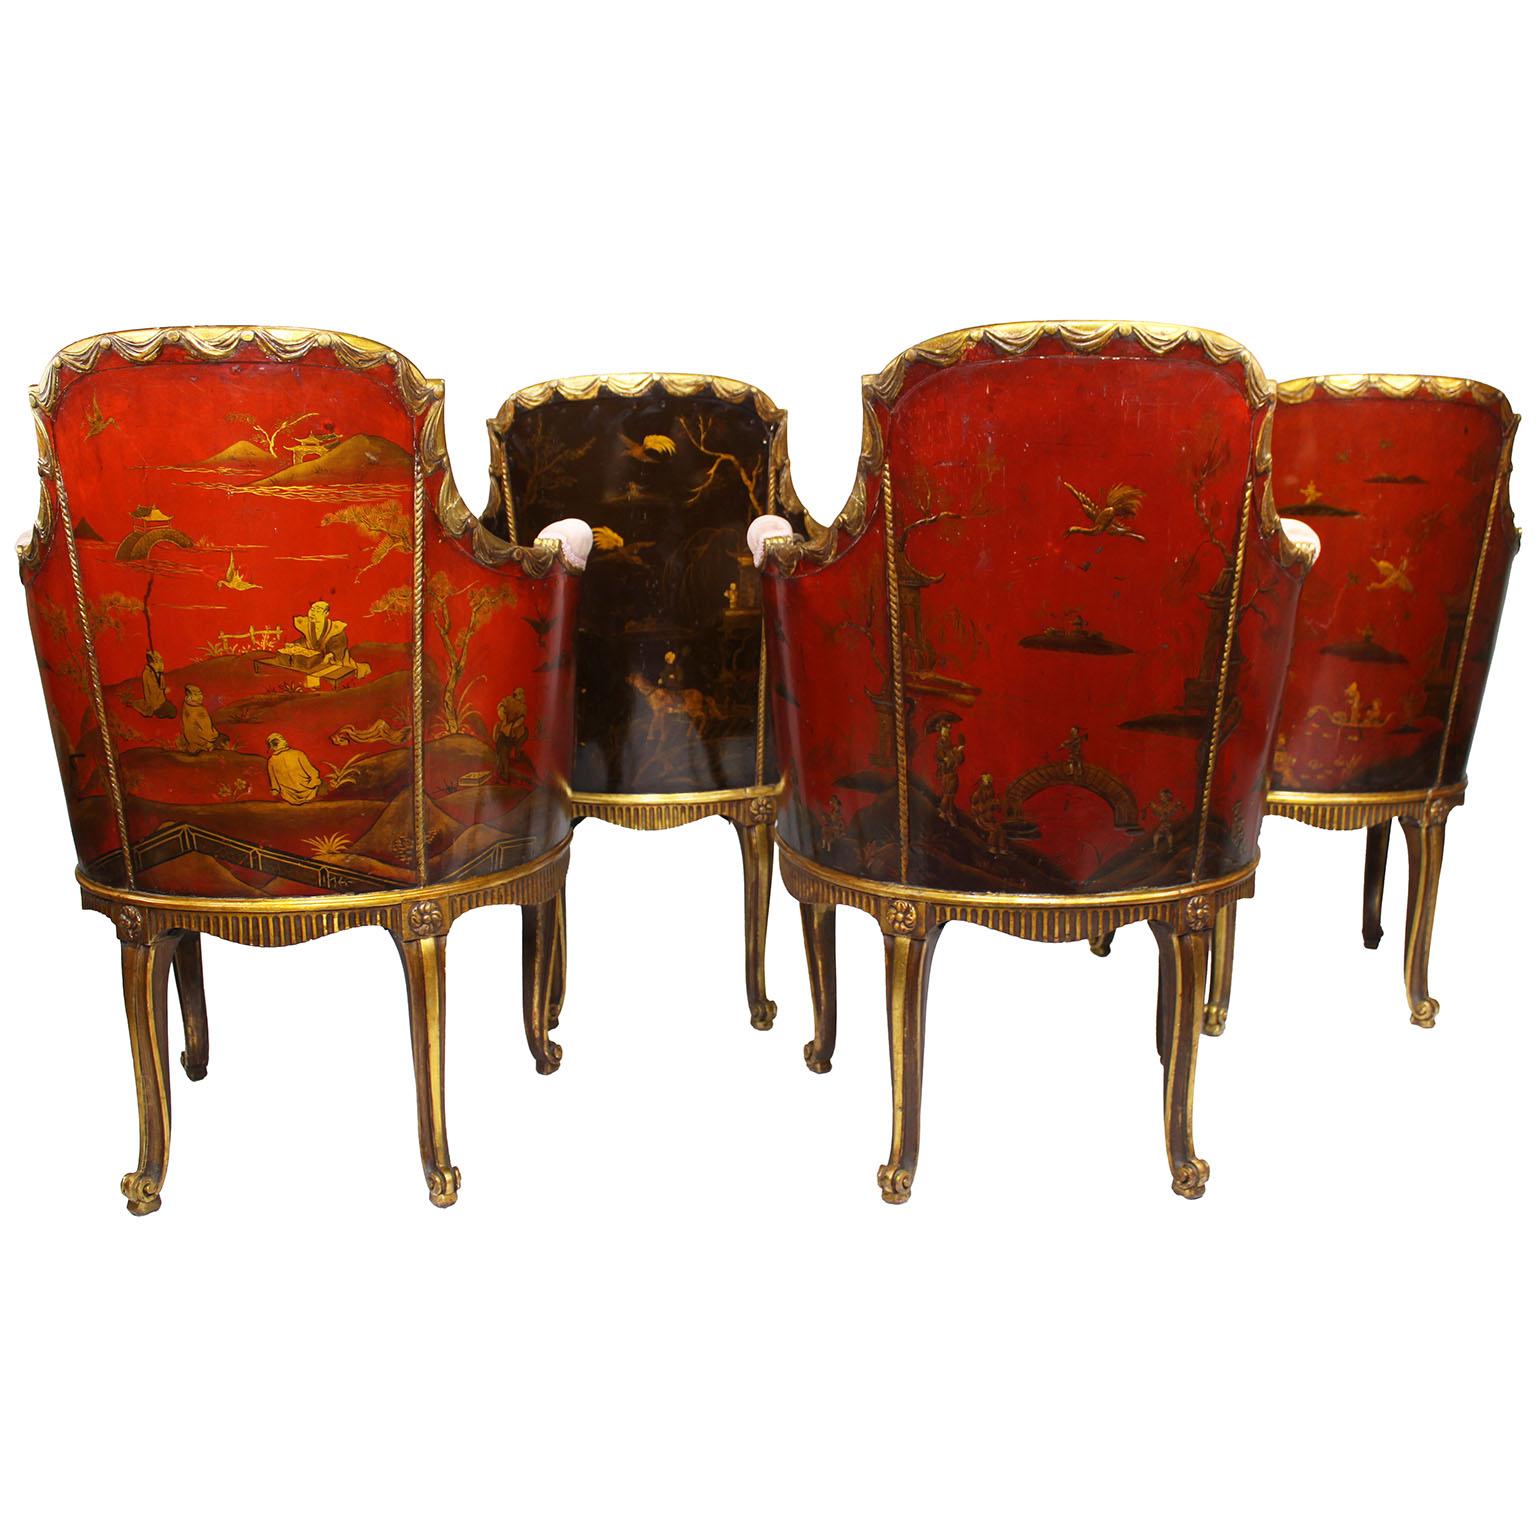 Ein feines und seltenes Set von vier französischen Sesseln im Stil Louis XV aus vergoldetem Holz, geschnitzt und mit Chinoiserie-Lack verziert, zugeschrieben Maison Jansen (Haus Jansen). Die abgerundeten tonnenförmigen Gestelle mit gepolsterter